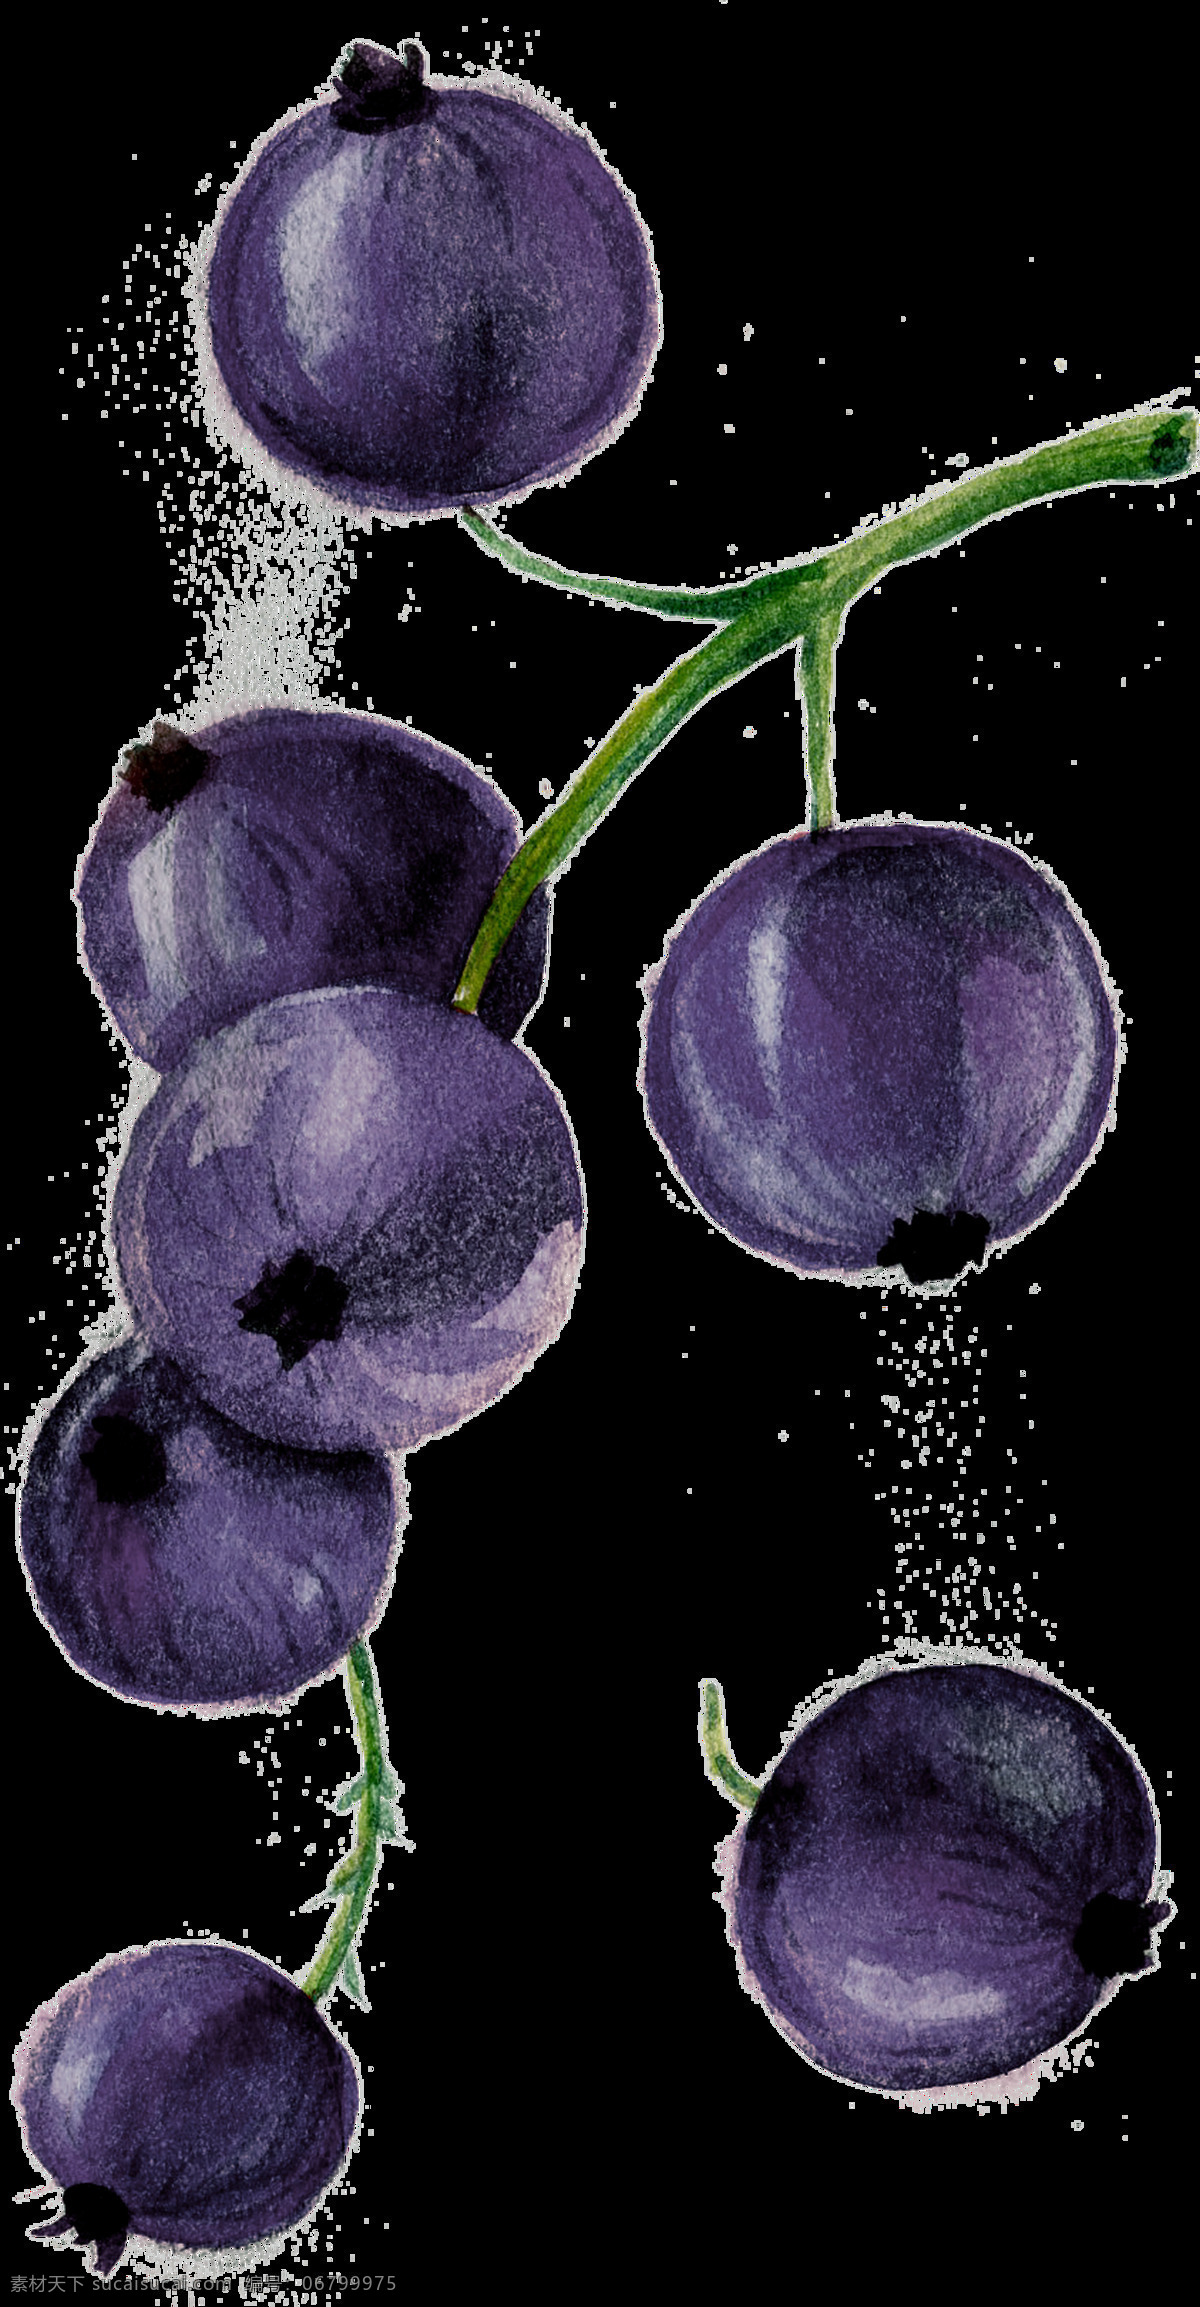 蓝莓 卡通 透明 水果 抠图专用 装饰 设计素材